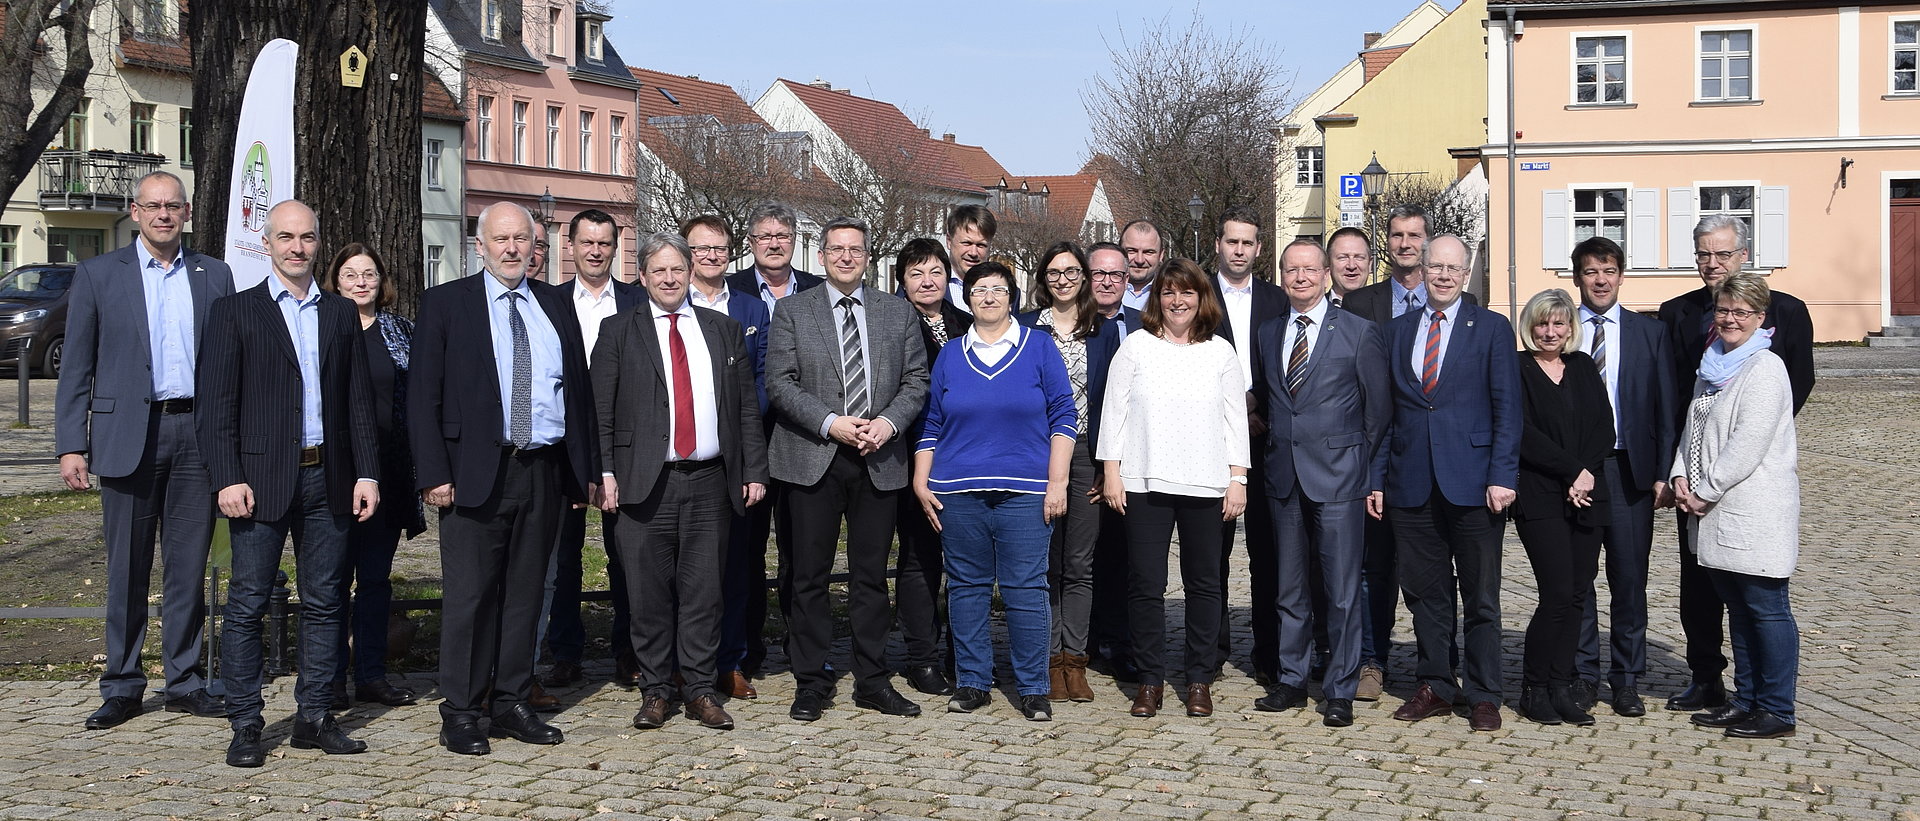 Teilnehmer der Klausurtagung des Landesausschusses des Städte- und Gemeindebundes Brandenburg